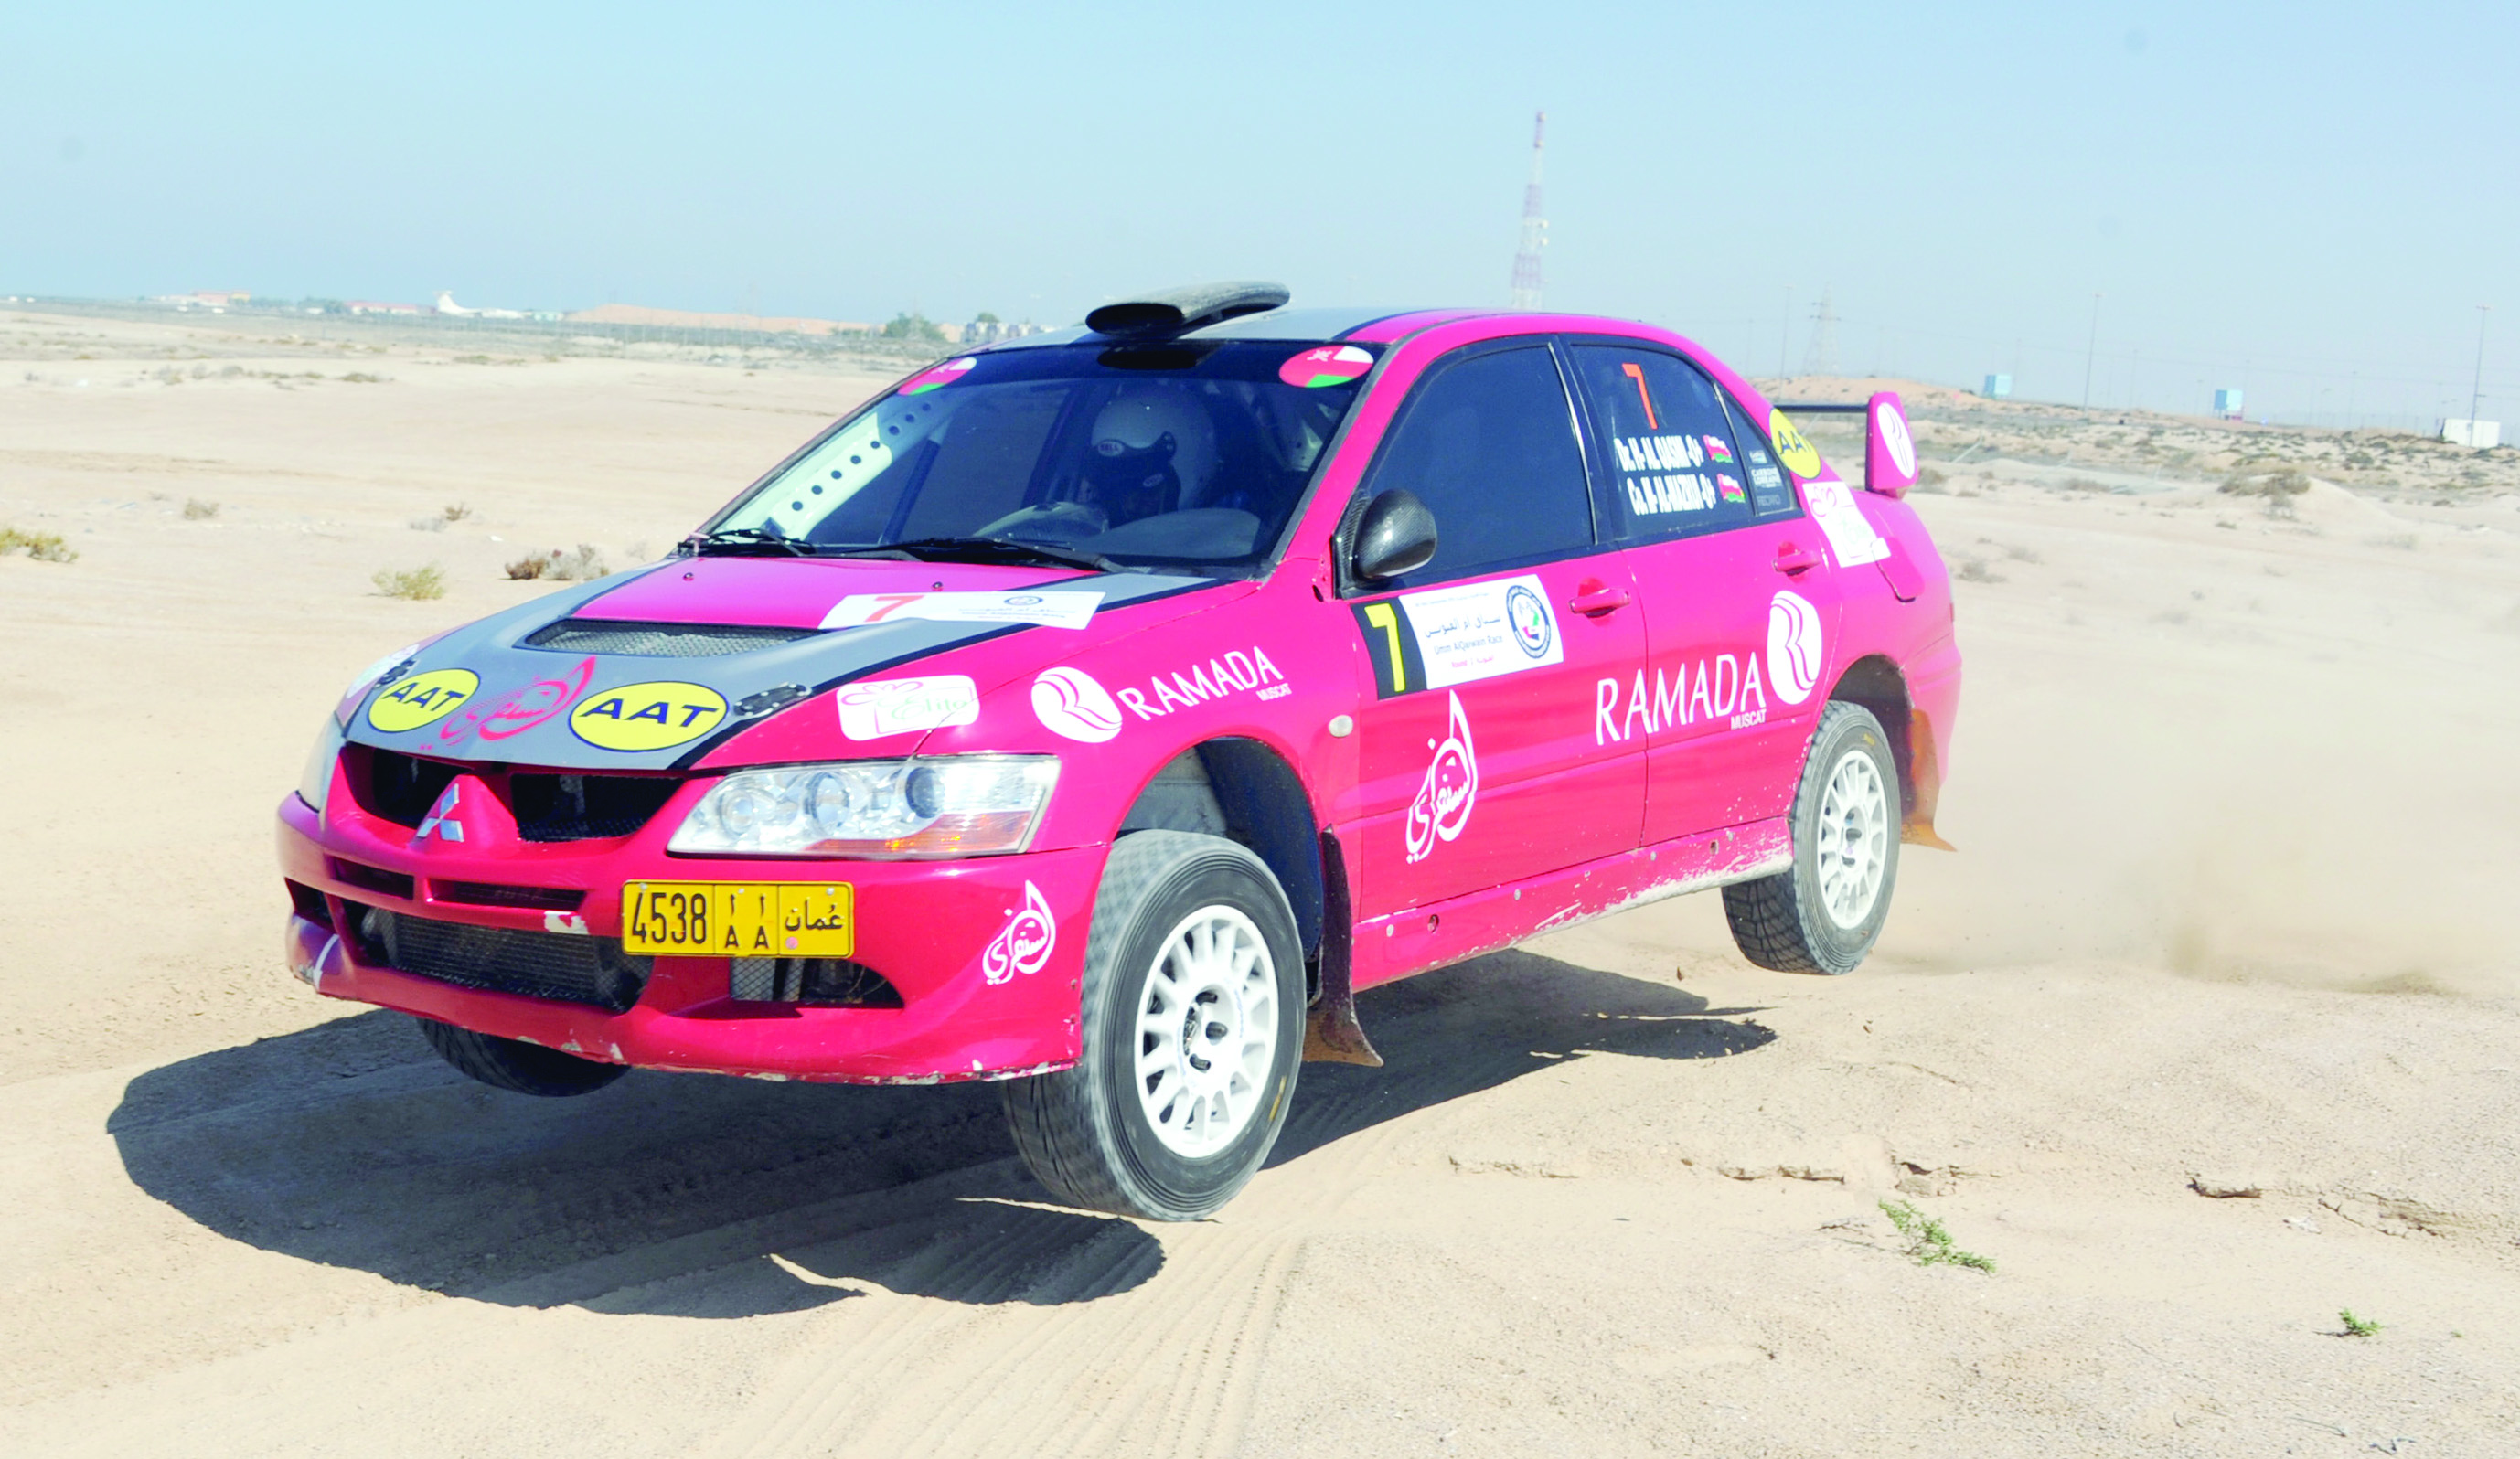 خمسة متسابقين عمانيين يتنافسون في رالي الشارقة